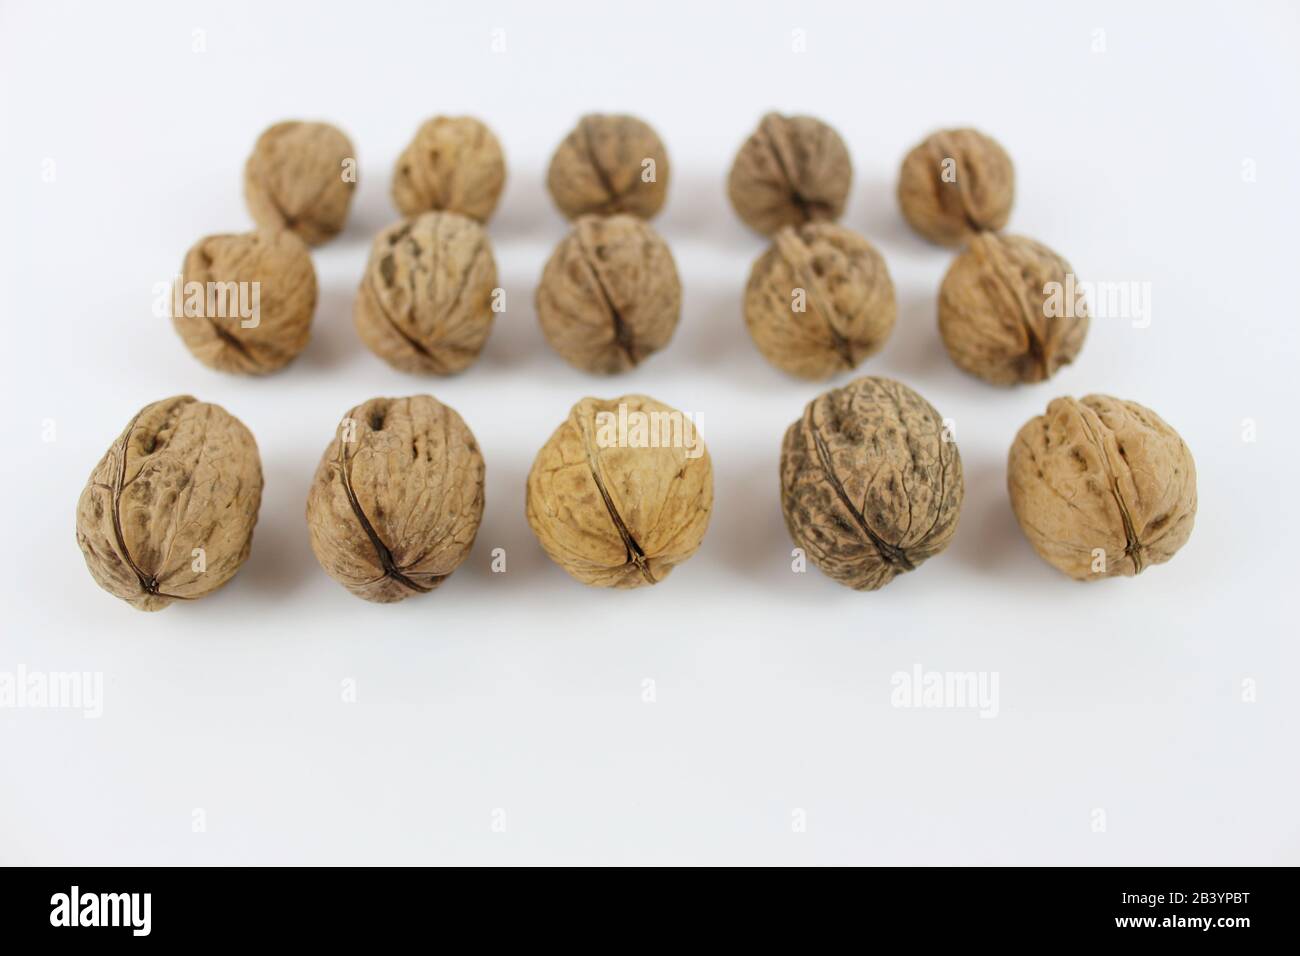 Groupe de noix, fruits secs, positionnés en lignes parallèles, avec encadrement frontal. Banque D'Images